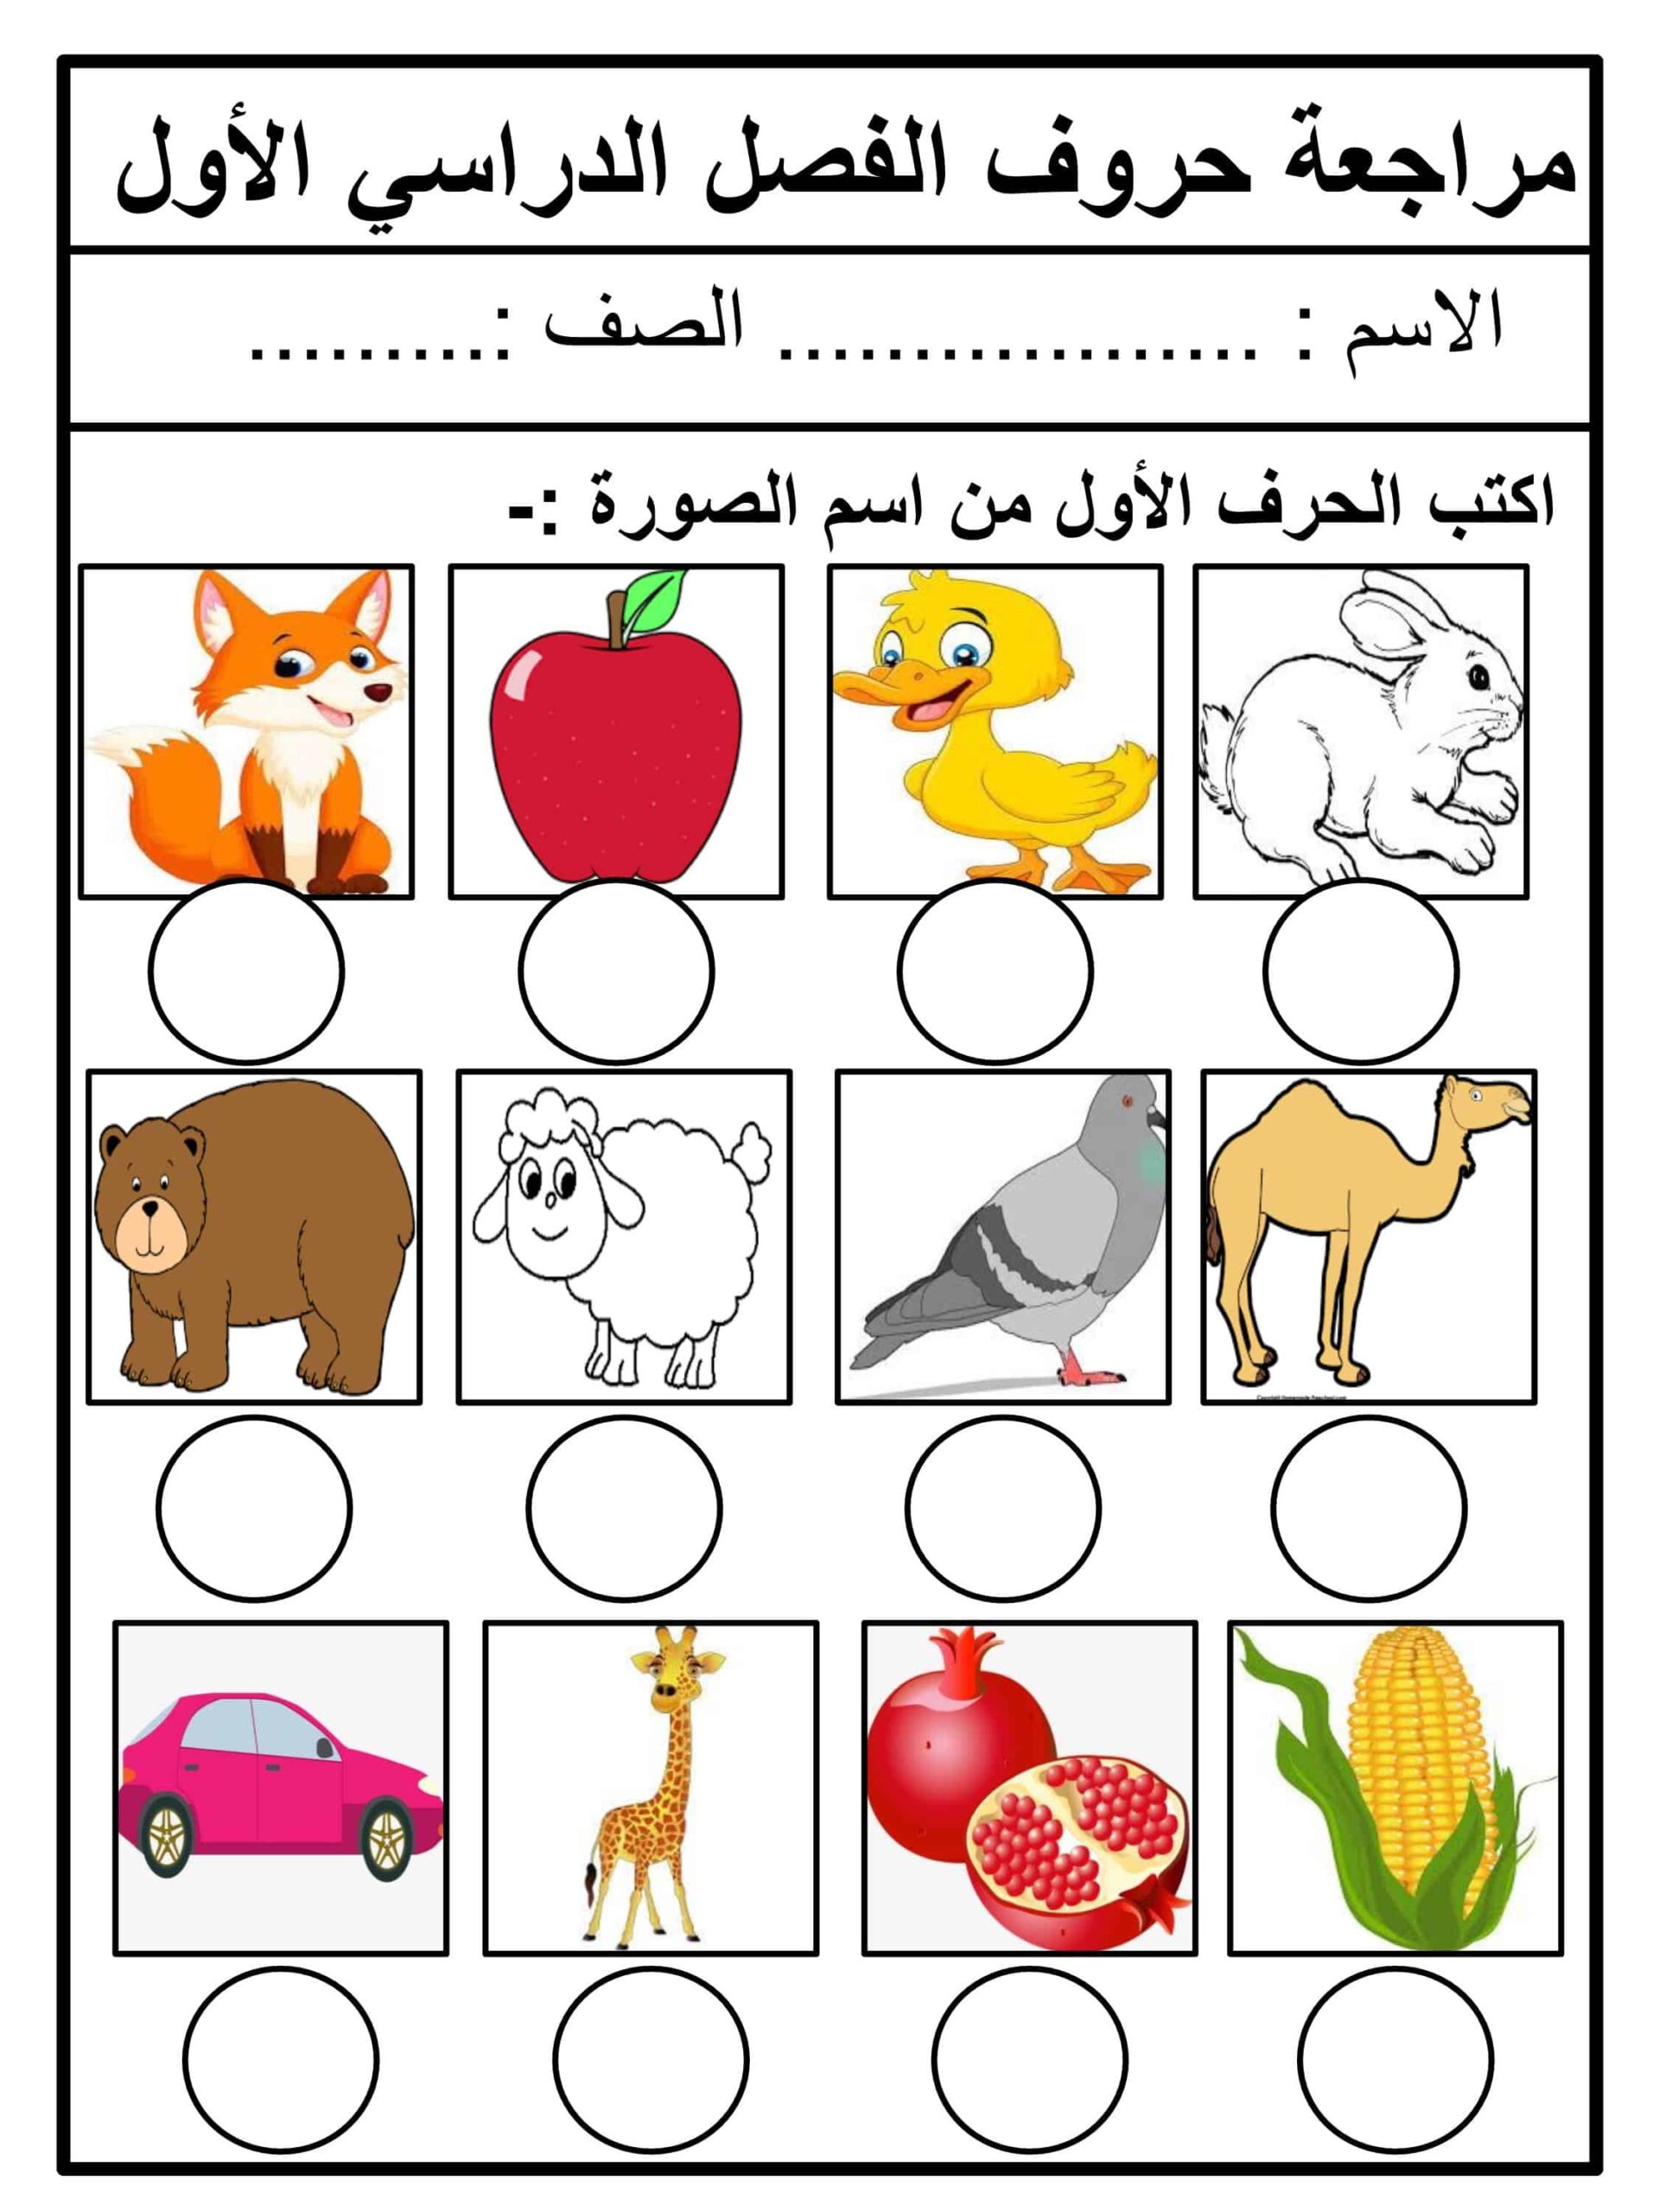 مراجعة حروف الفصل الدراسي الأول اللغة العربية الصف الأول